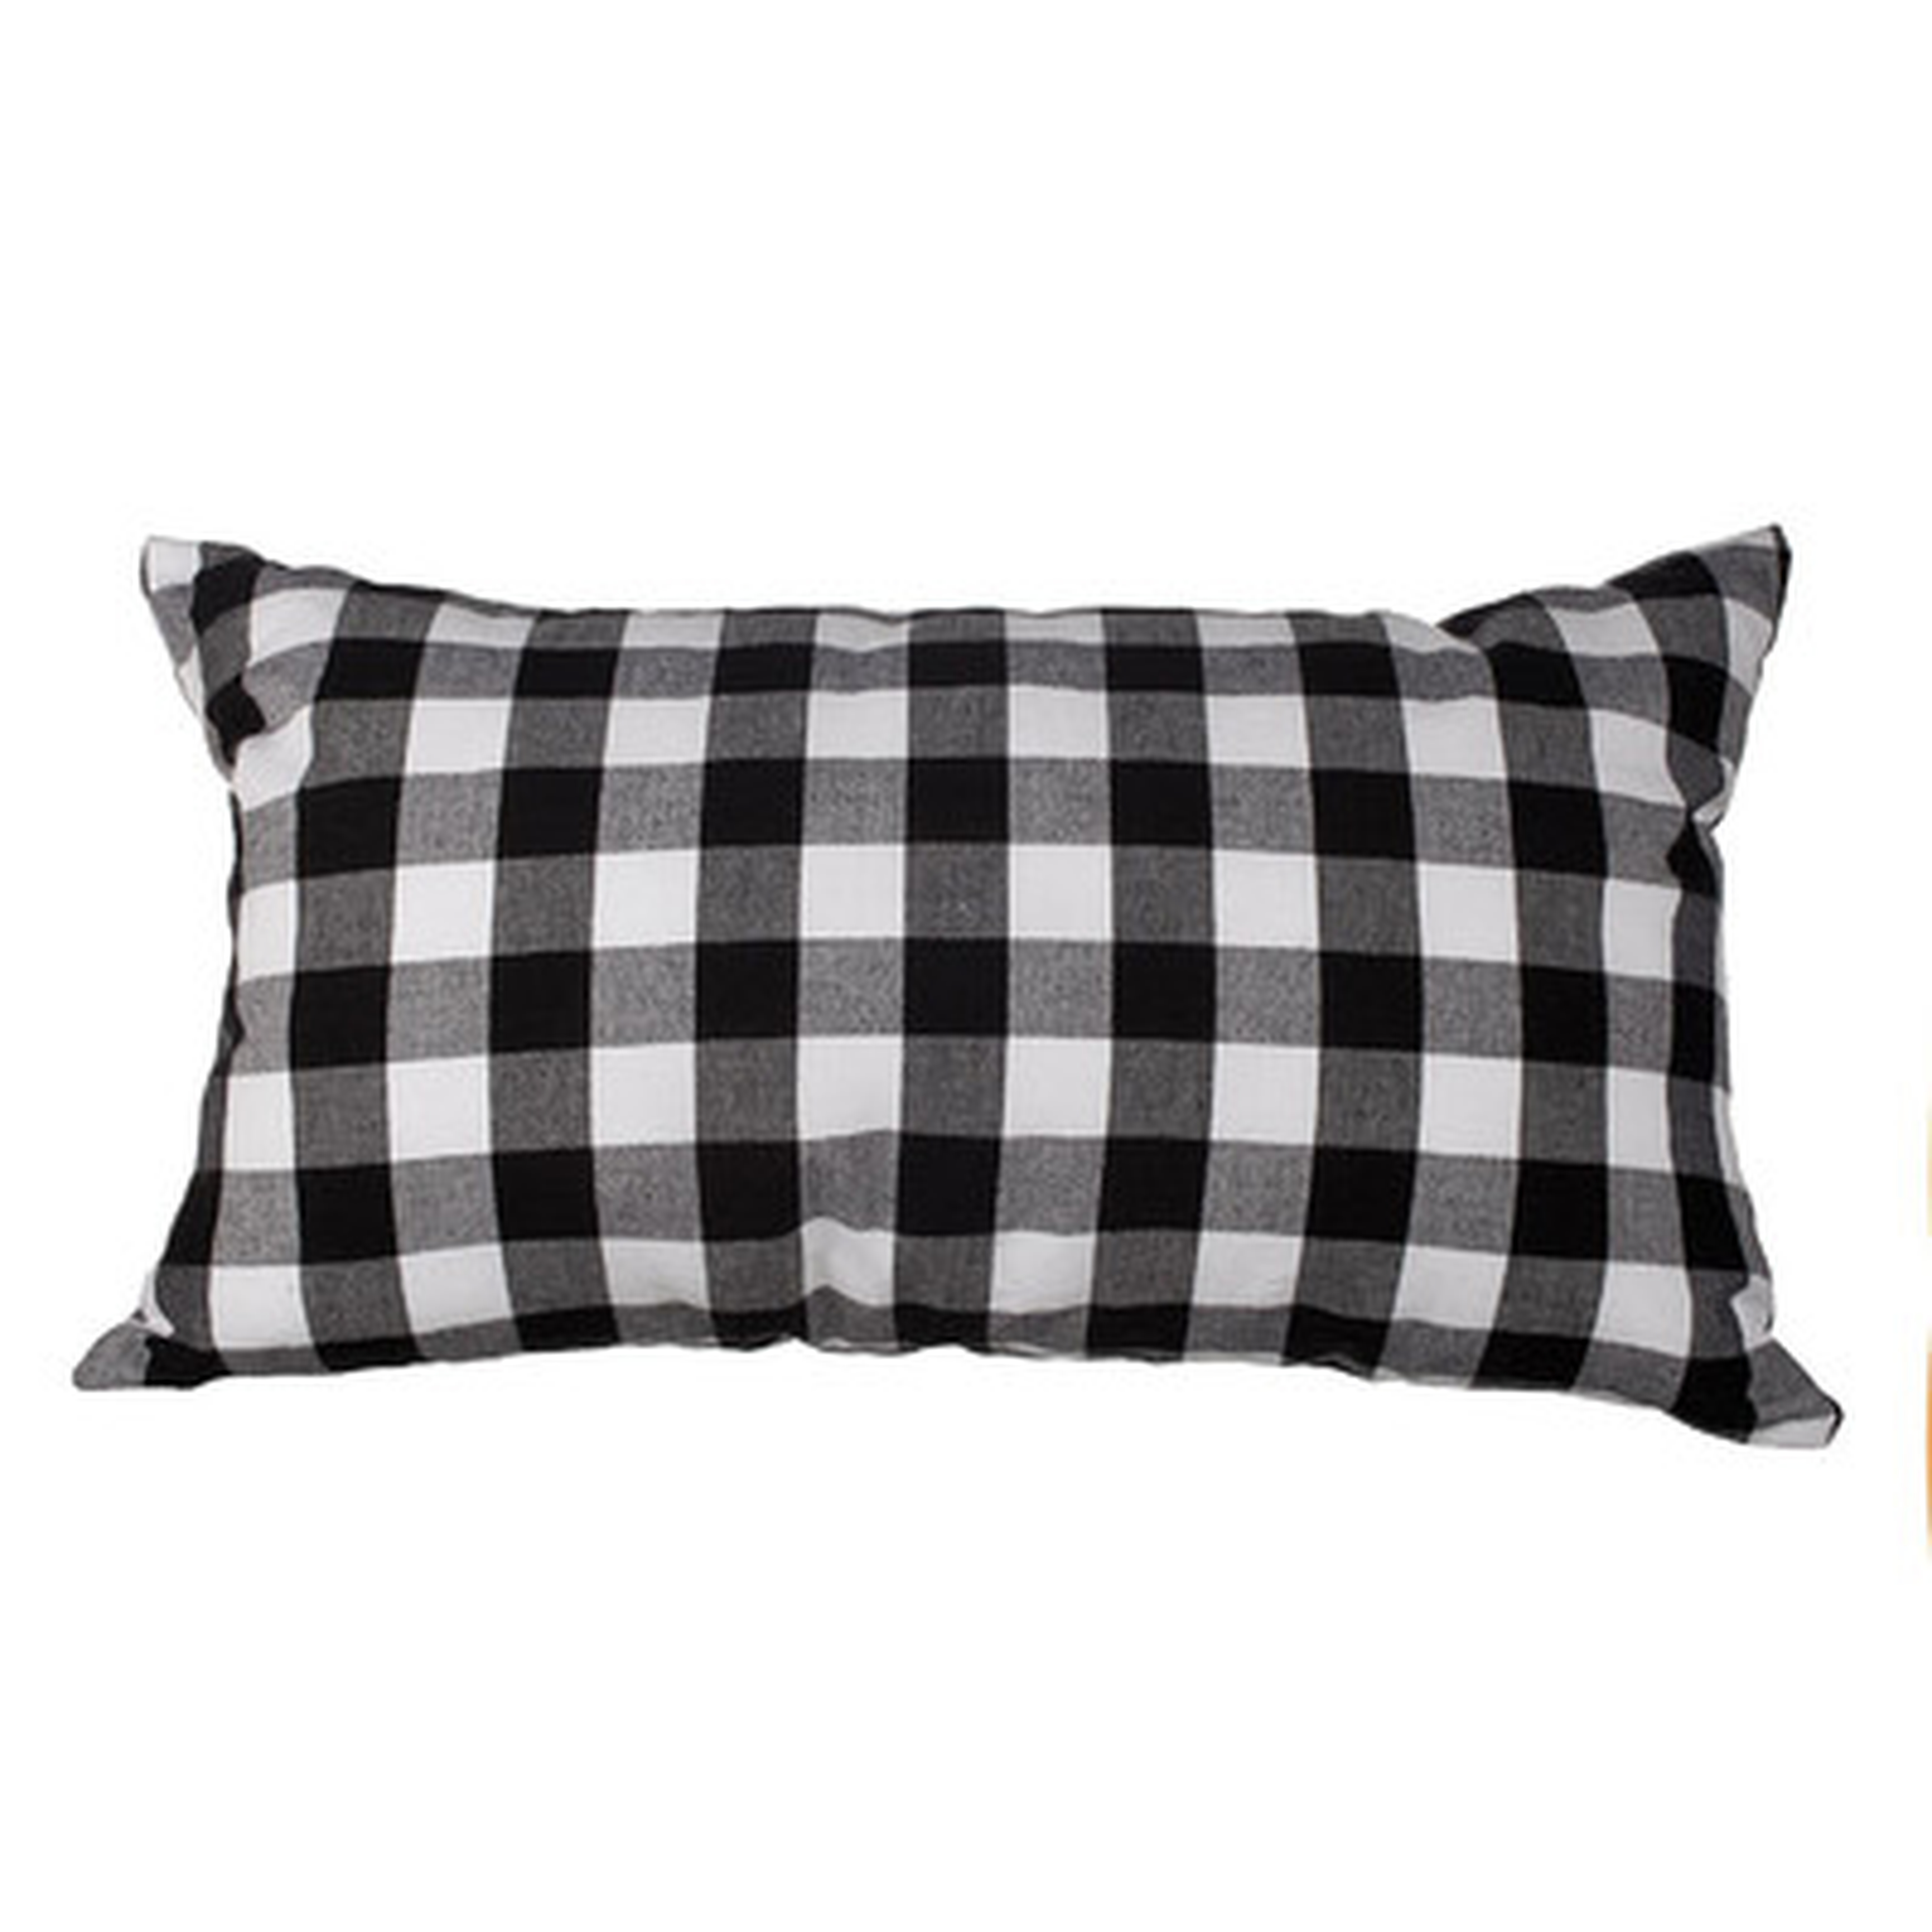 Delano Décor Buffalo Check Cotton Lumbar Pillow  -With Insert - Wayfair